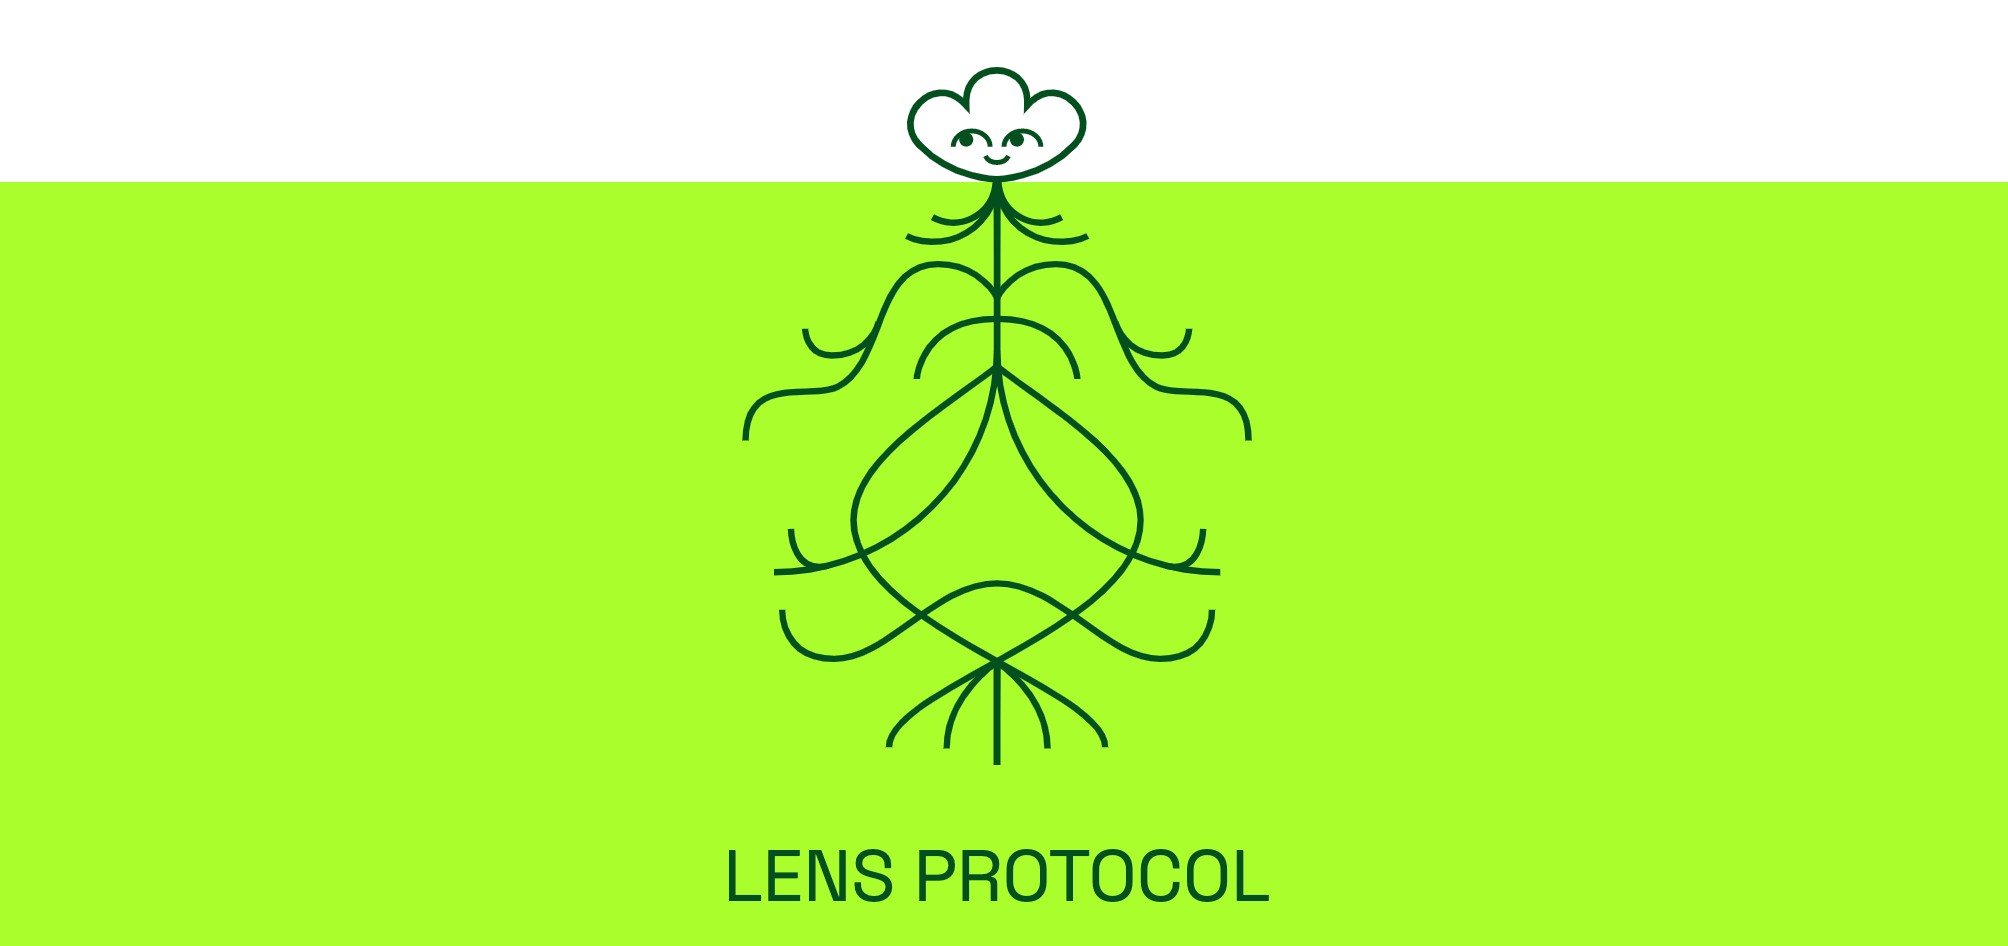 Protocolo de lente